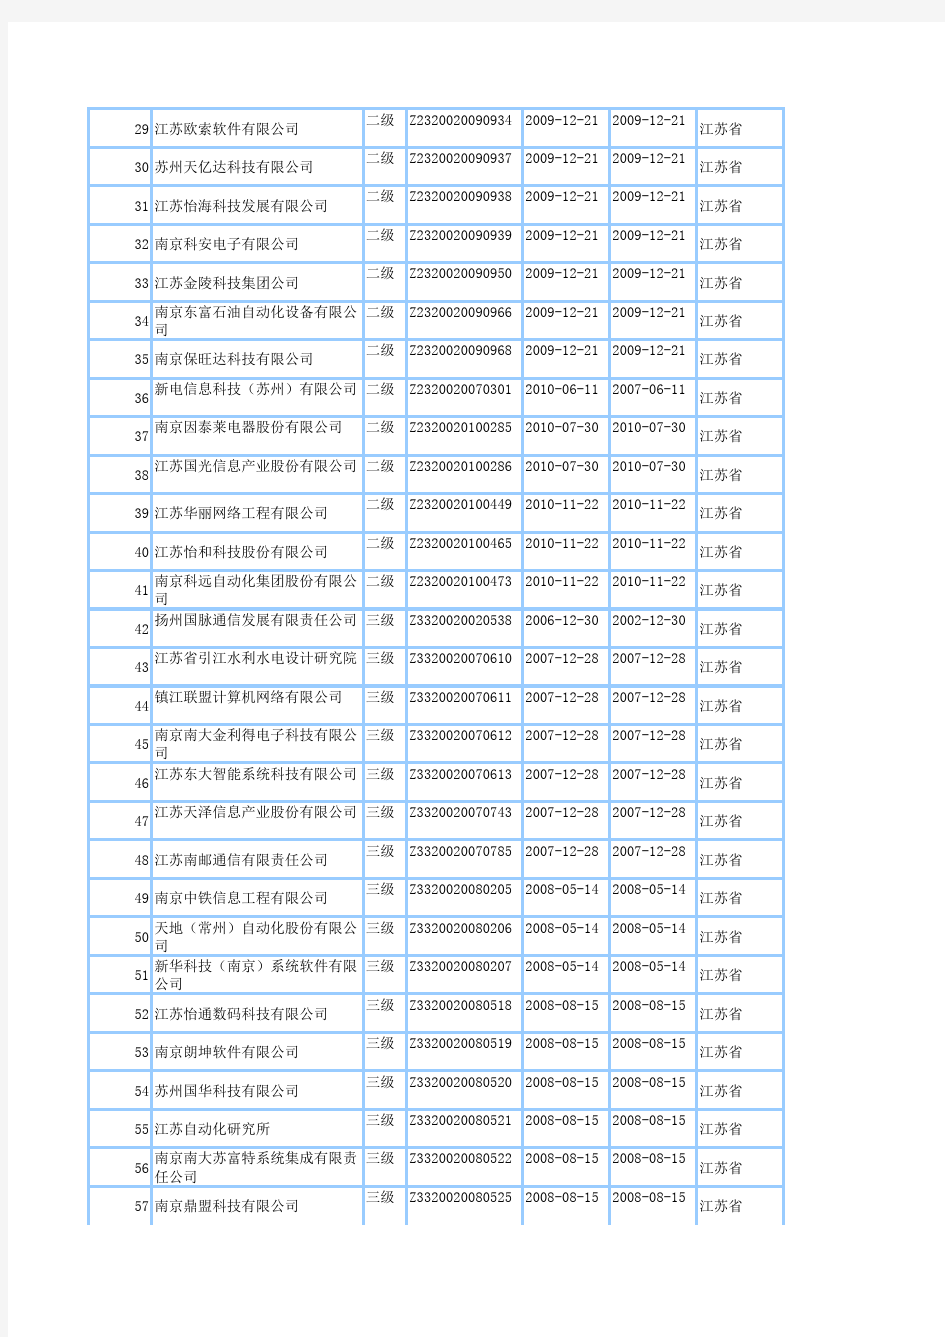 2011最新江苏省系统集成商名单